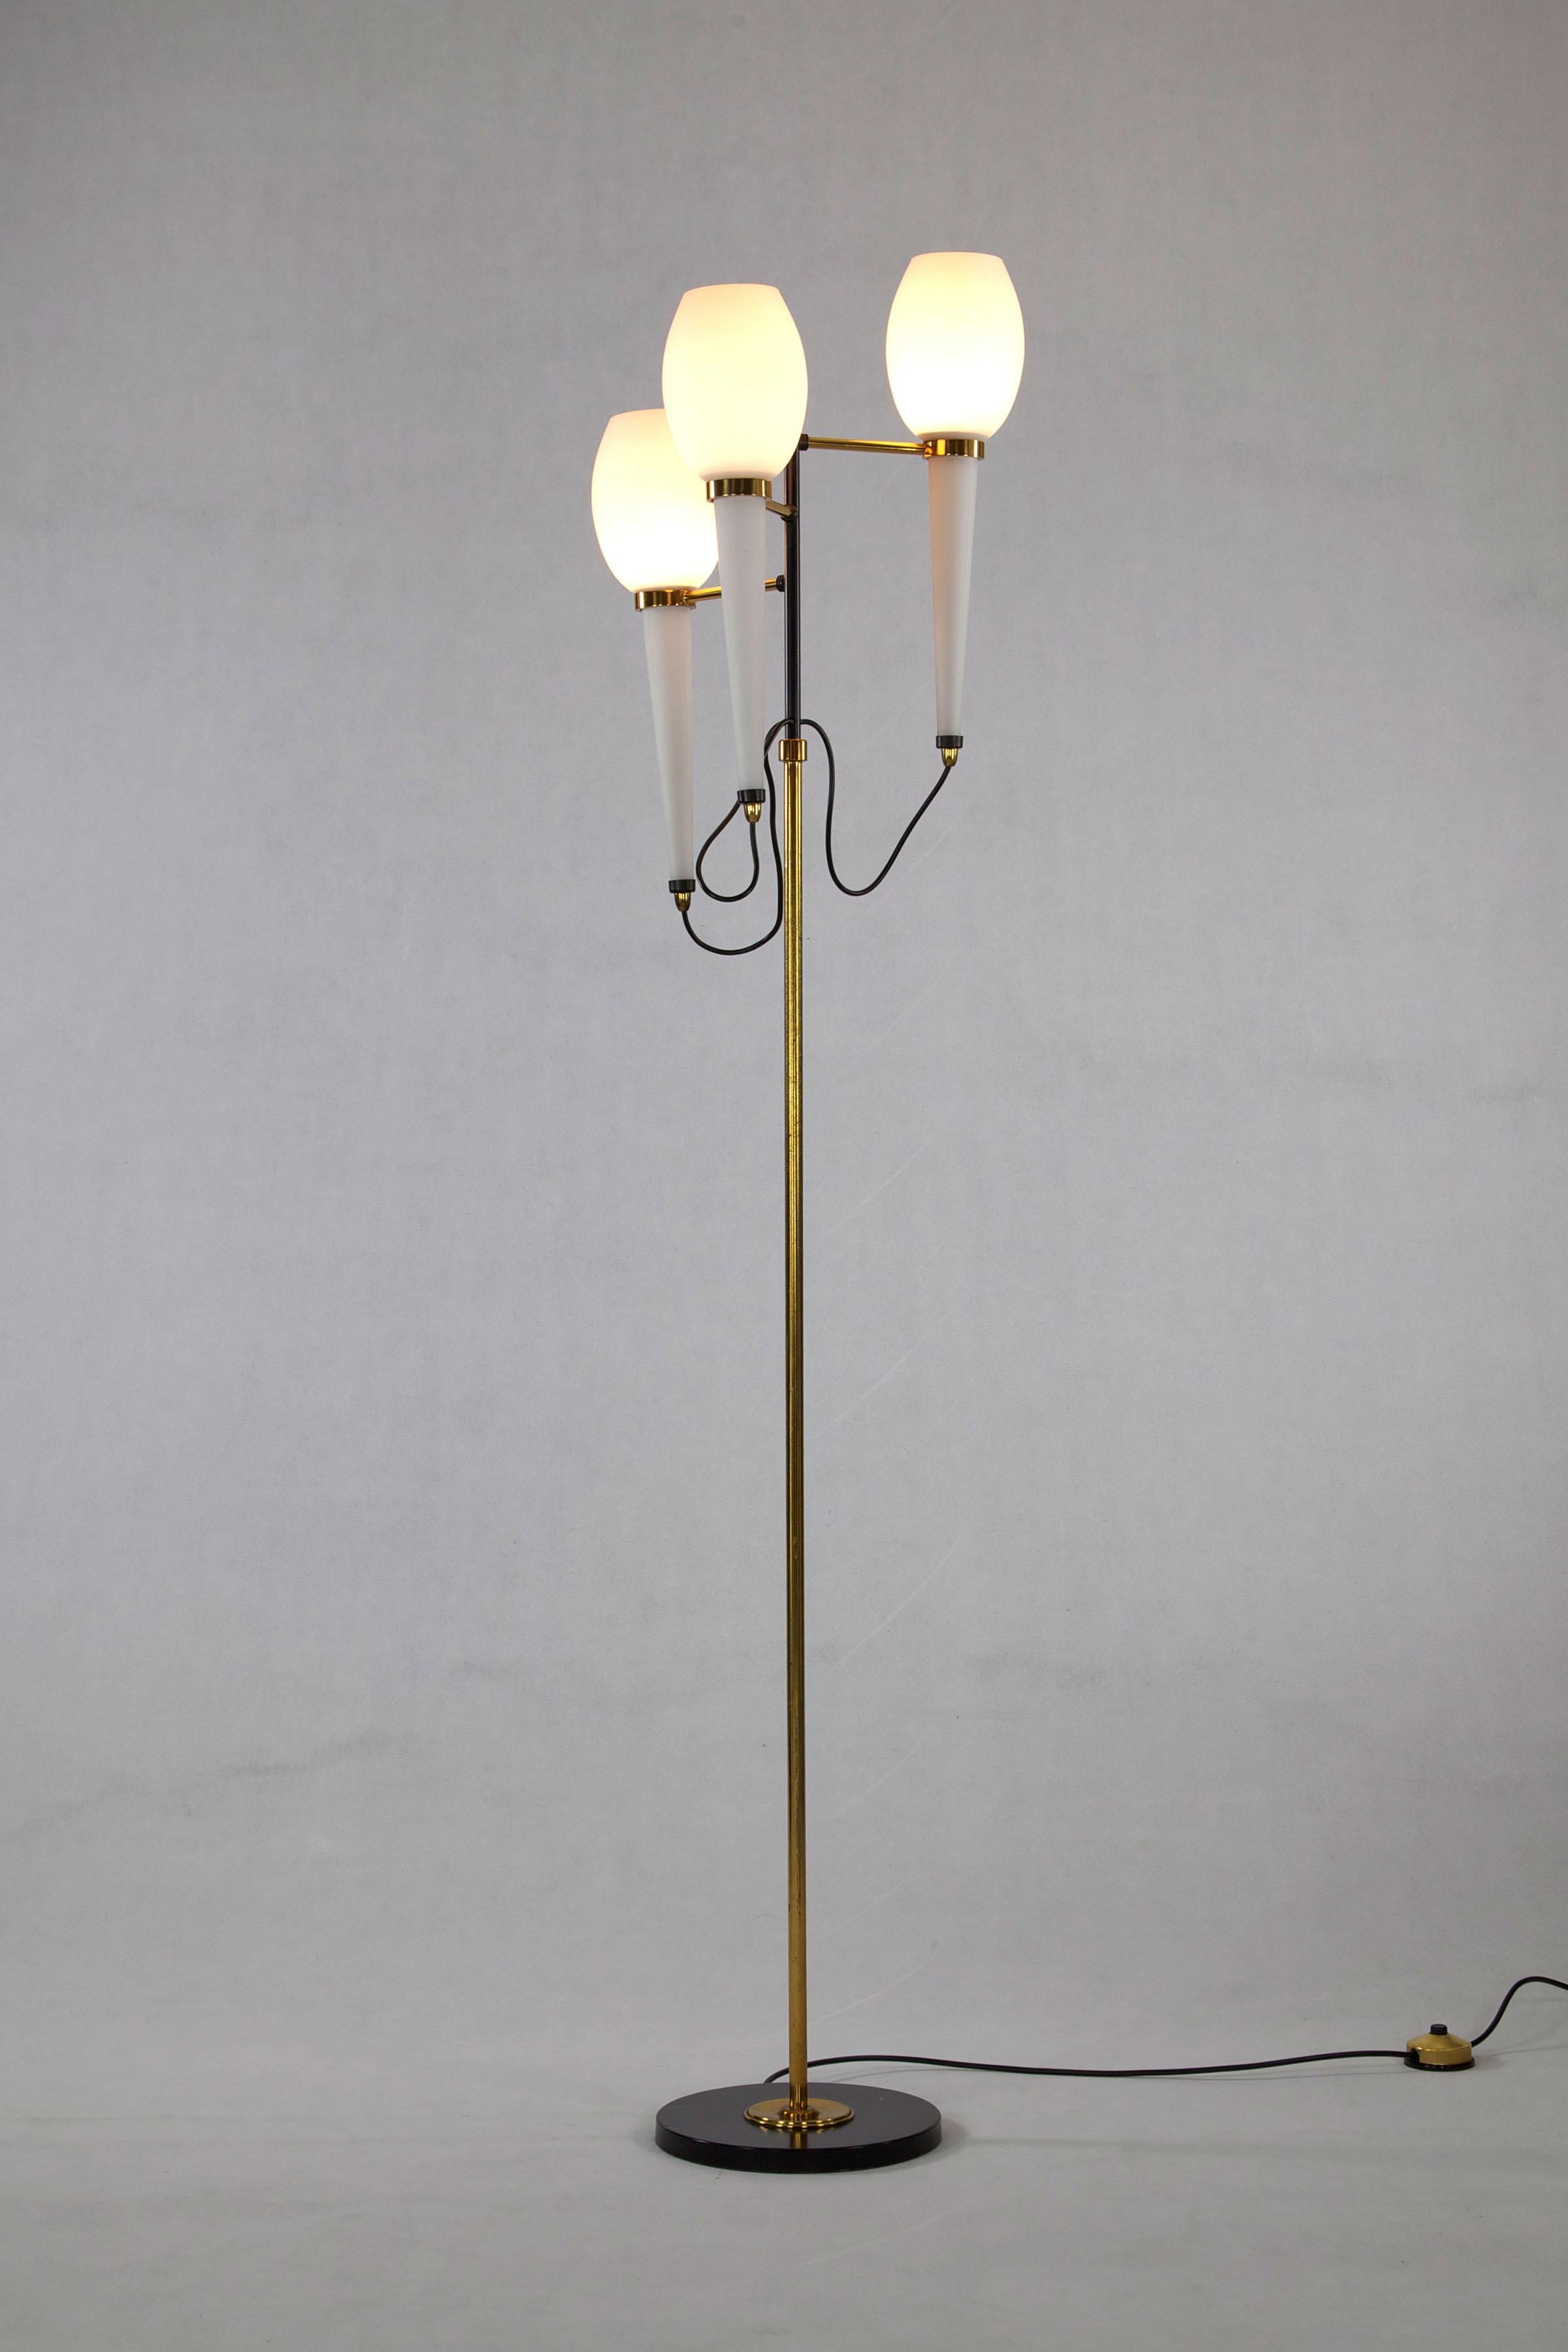 2er-Set - Stehlampen, entworfen und hergestellt von Stilnovo, Italien, 1950er Jahre. Die Leuchte hat drei Opalglasröhren, sowie einen lackierten Eisen- und Messingrahmen mit Marmorsockel.

Für detailliertere Bilder können Sie uns gerne kontaktieren.